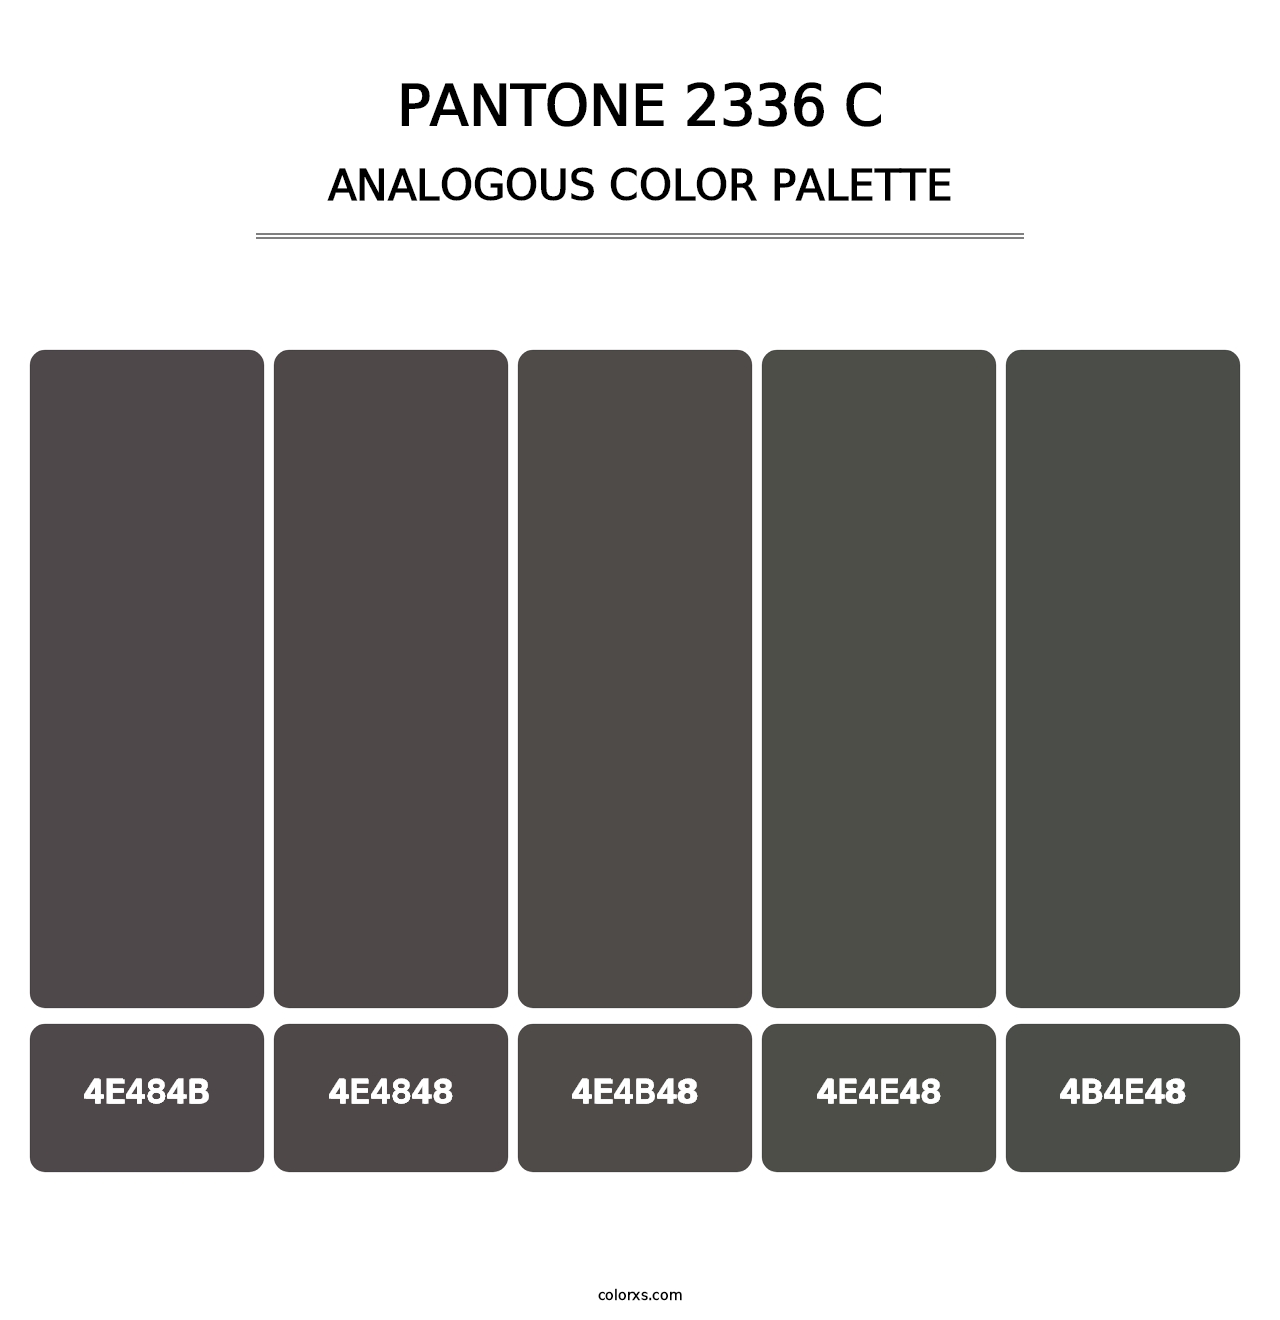 PANTONE 2336 C - Analogous Color Palette